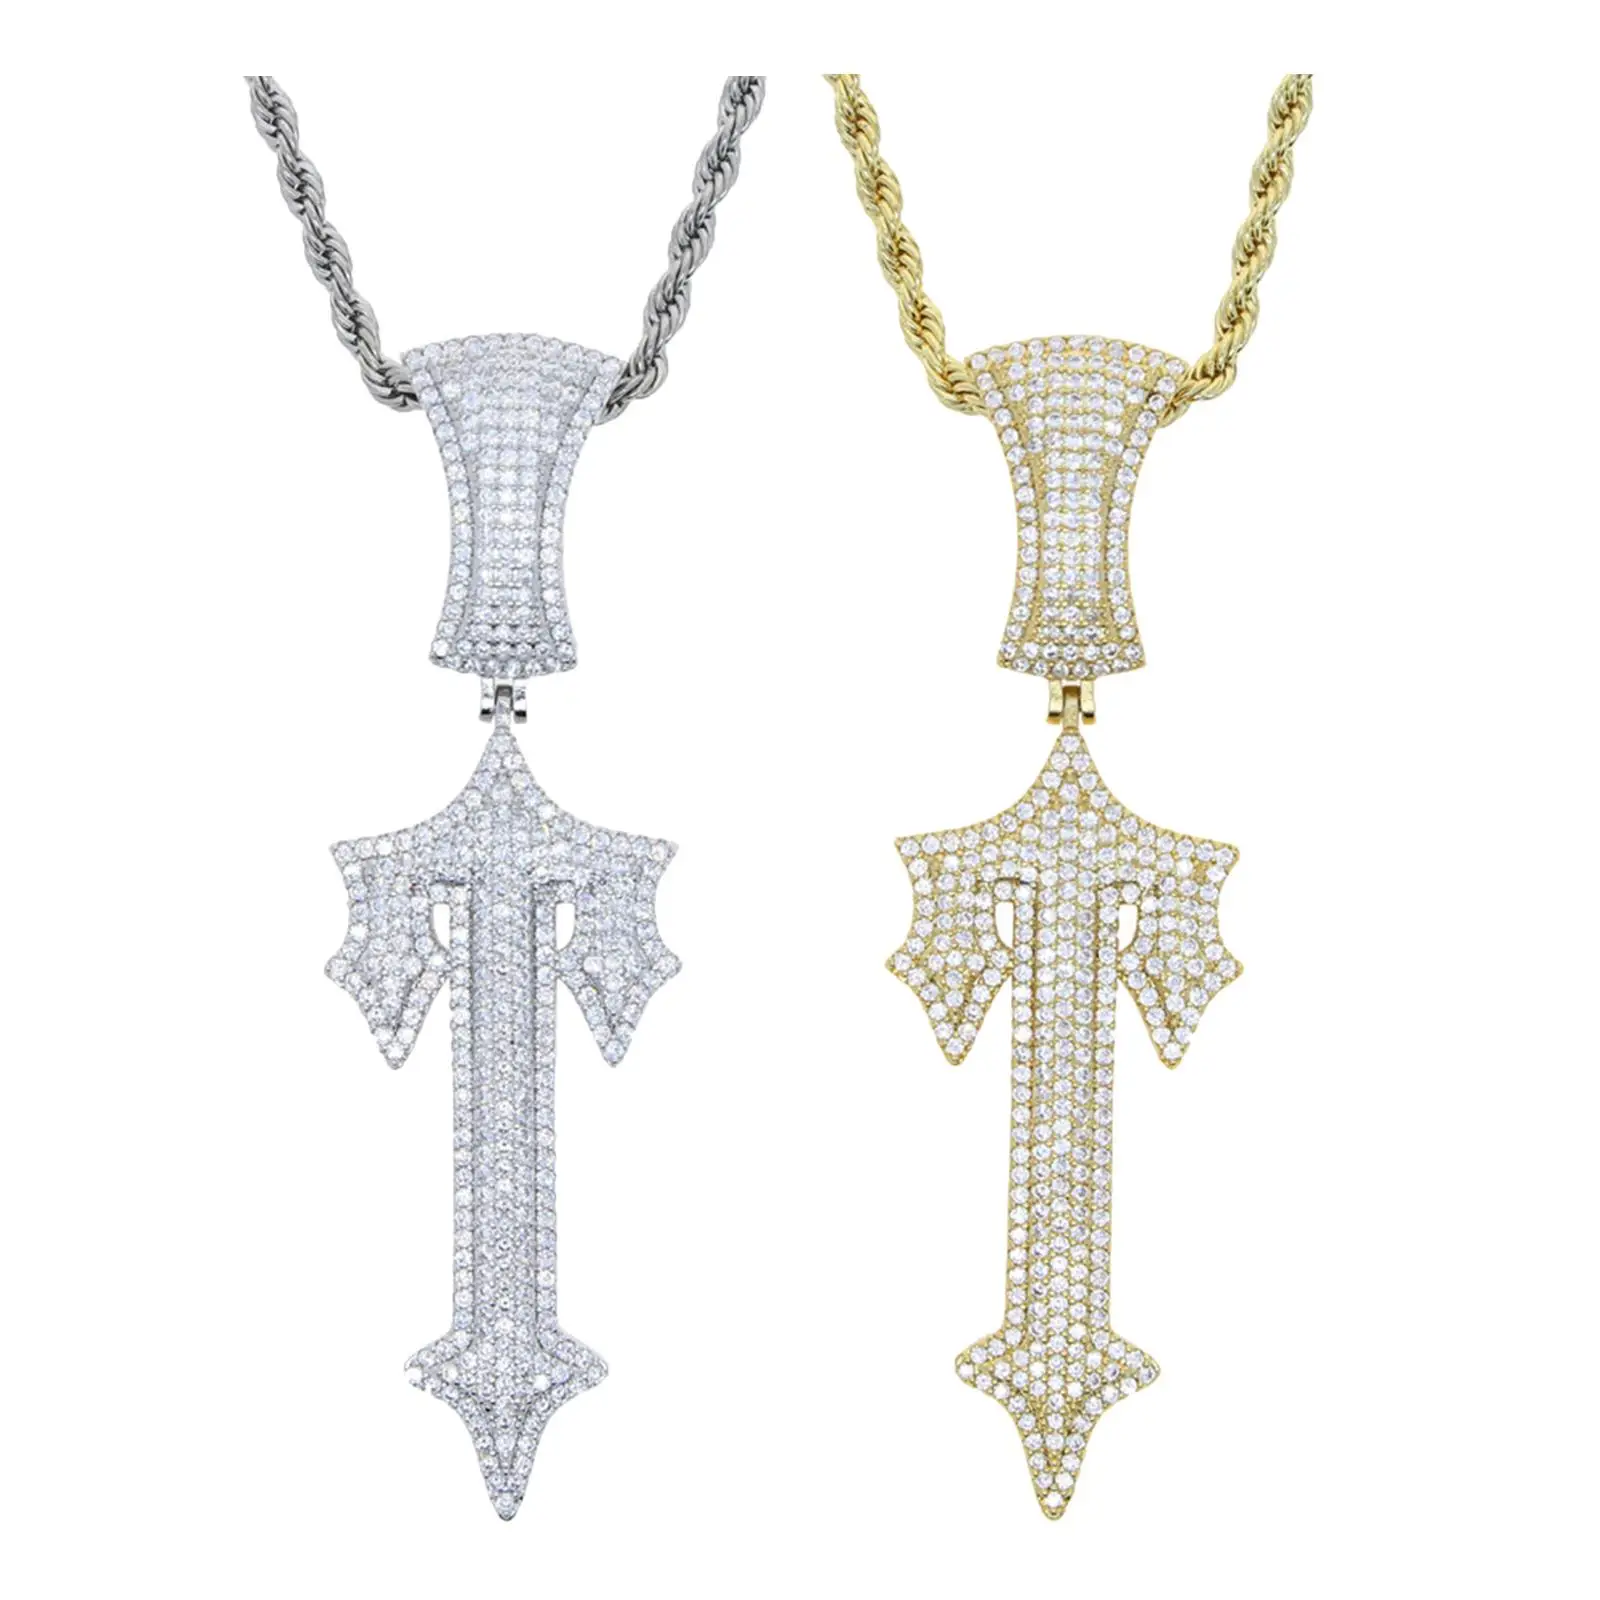 

Стильное ожерелье с подвеской-крестом, массивные подвески, металлические украшения для вечеринки, костюма, Косплея